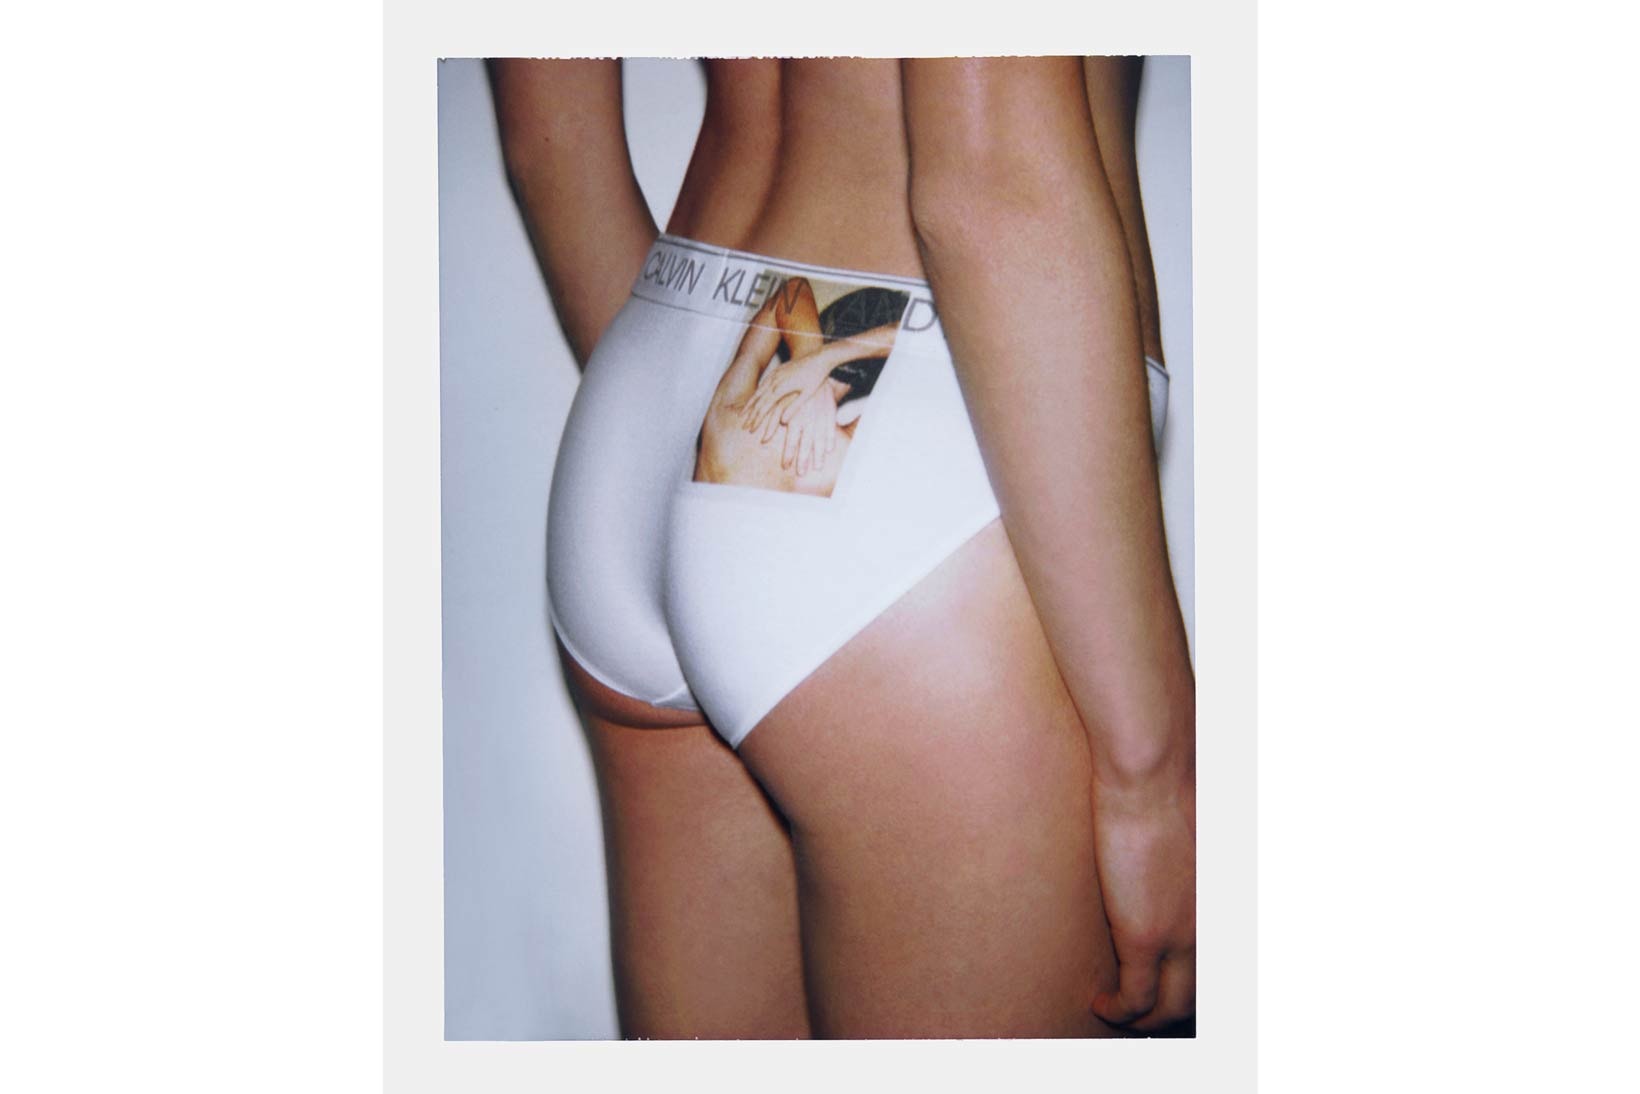 Calvin Klein Underwear Andy Warhol Lookbook